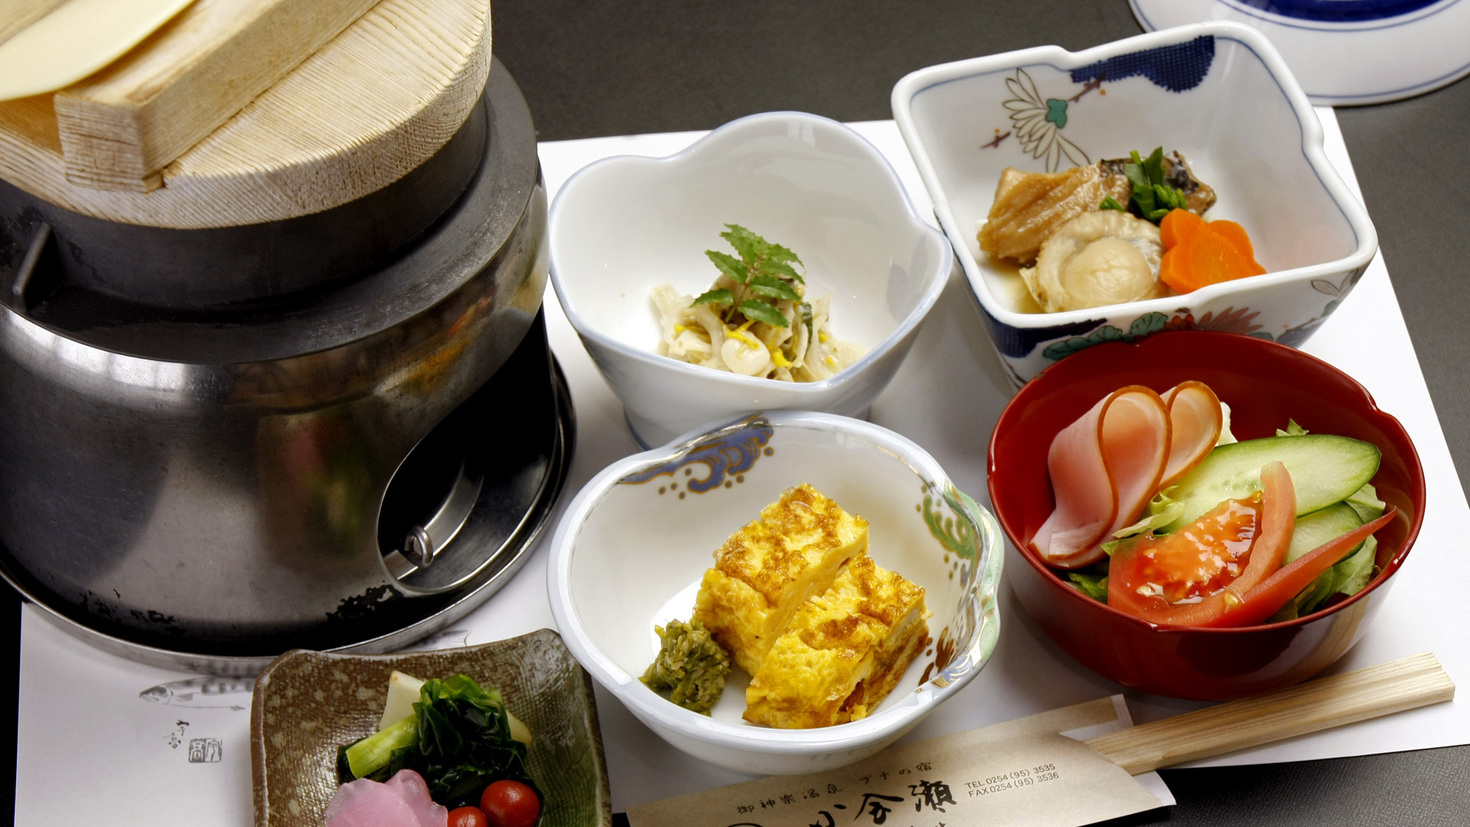 【朝食一例】旬の具入りのホカホカ釜飯など、純和風の朝ごはん